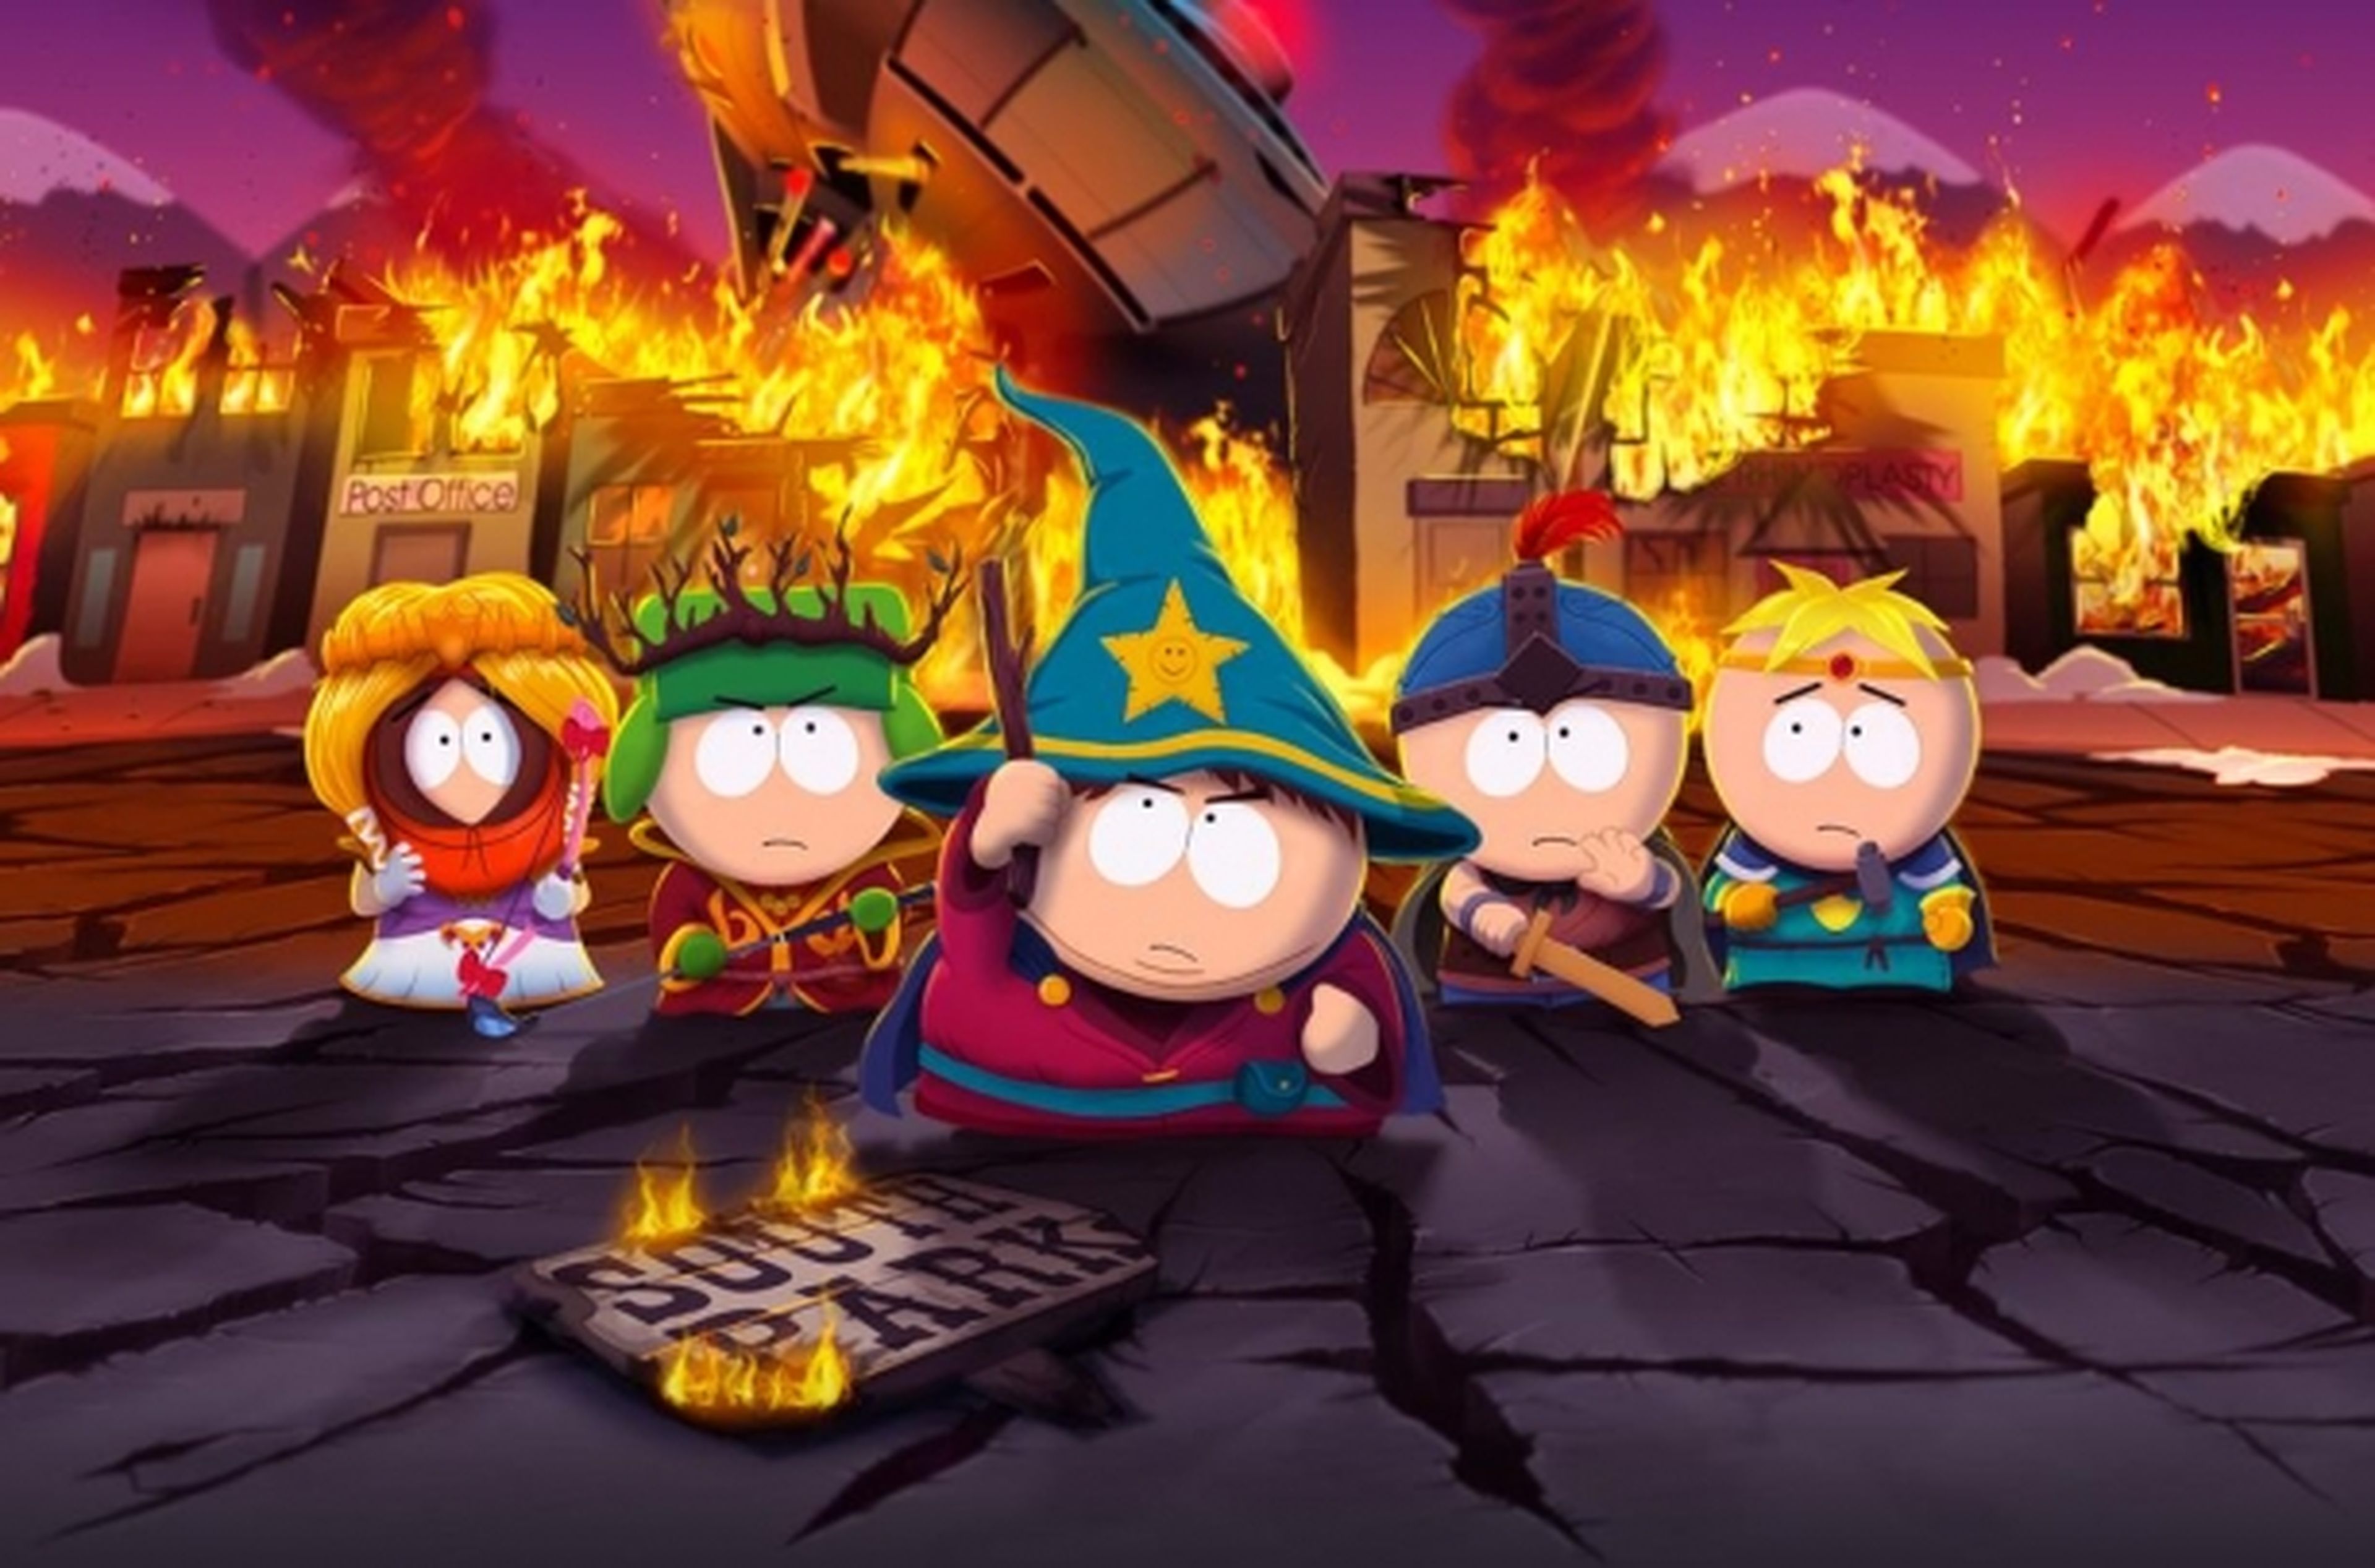 South Park retrasado en Alemania para quitar esvásticas